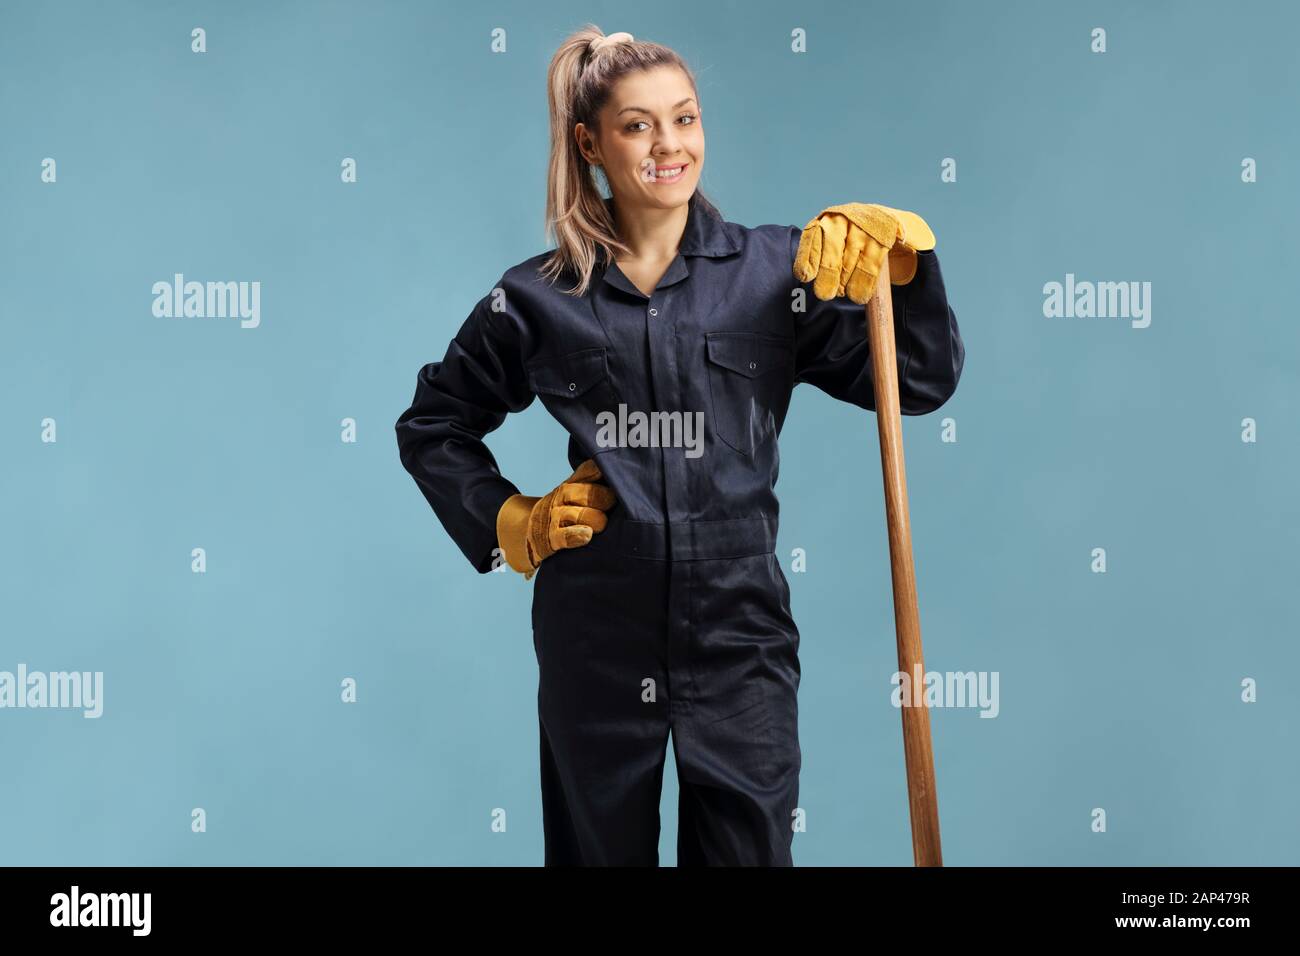 L'agricoltore femmina in un uniforme appoggiato su di un utensile di lavoro isolate su sfondo blu Foto Stock